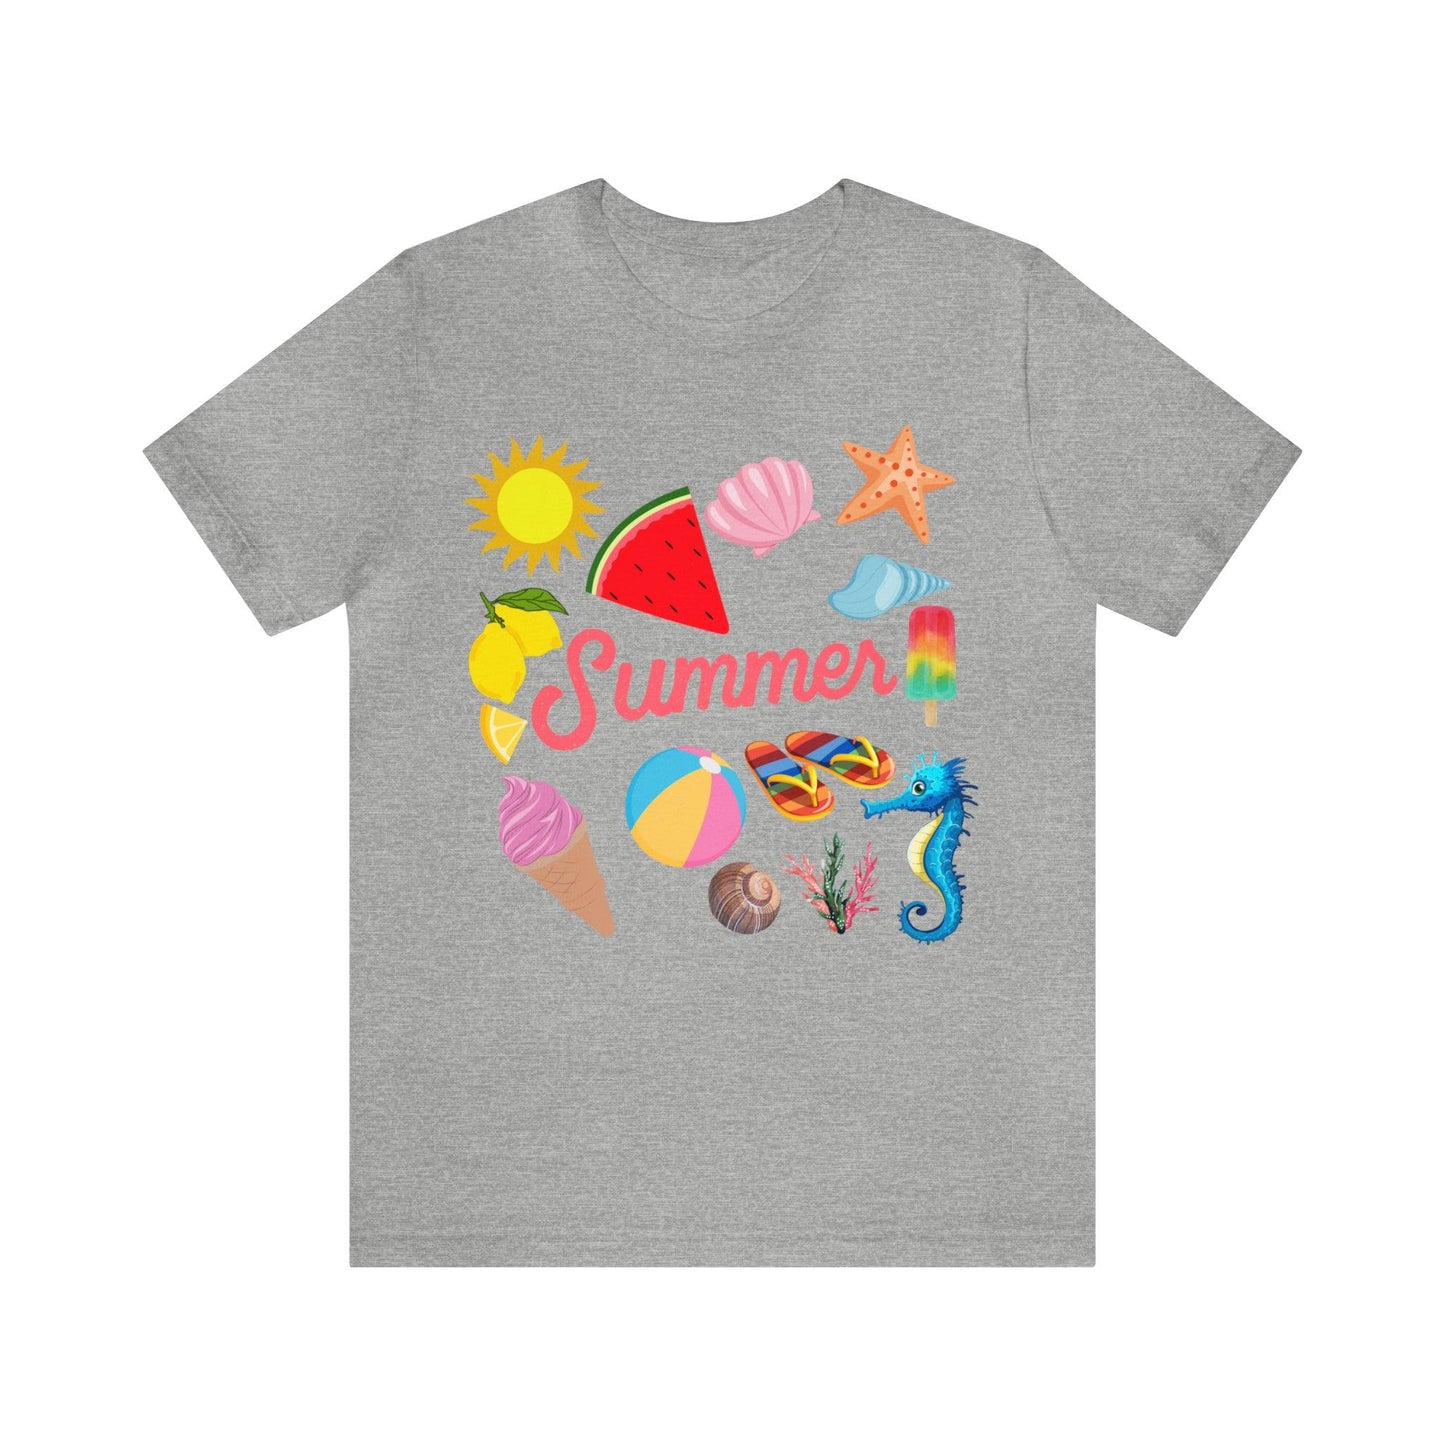 Fun Summer Shirt, Summer tshirt, Summer shirts for women and men